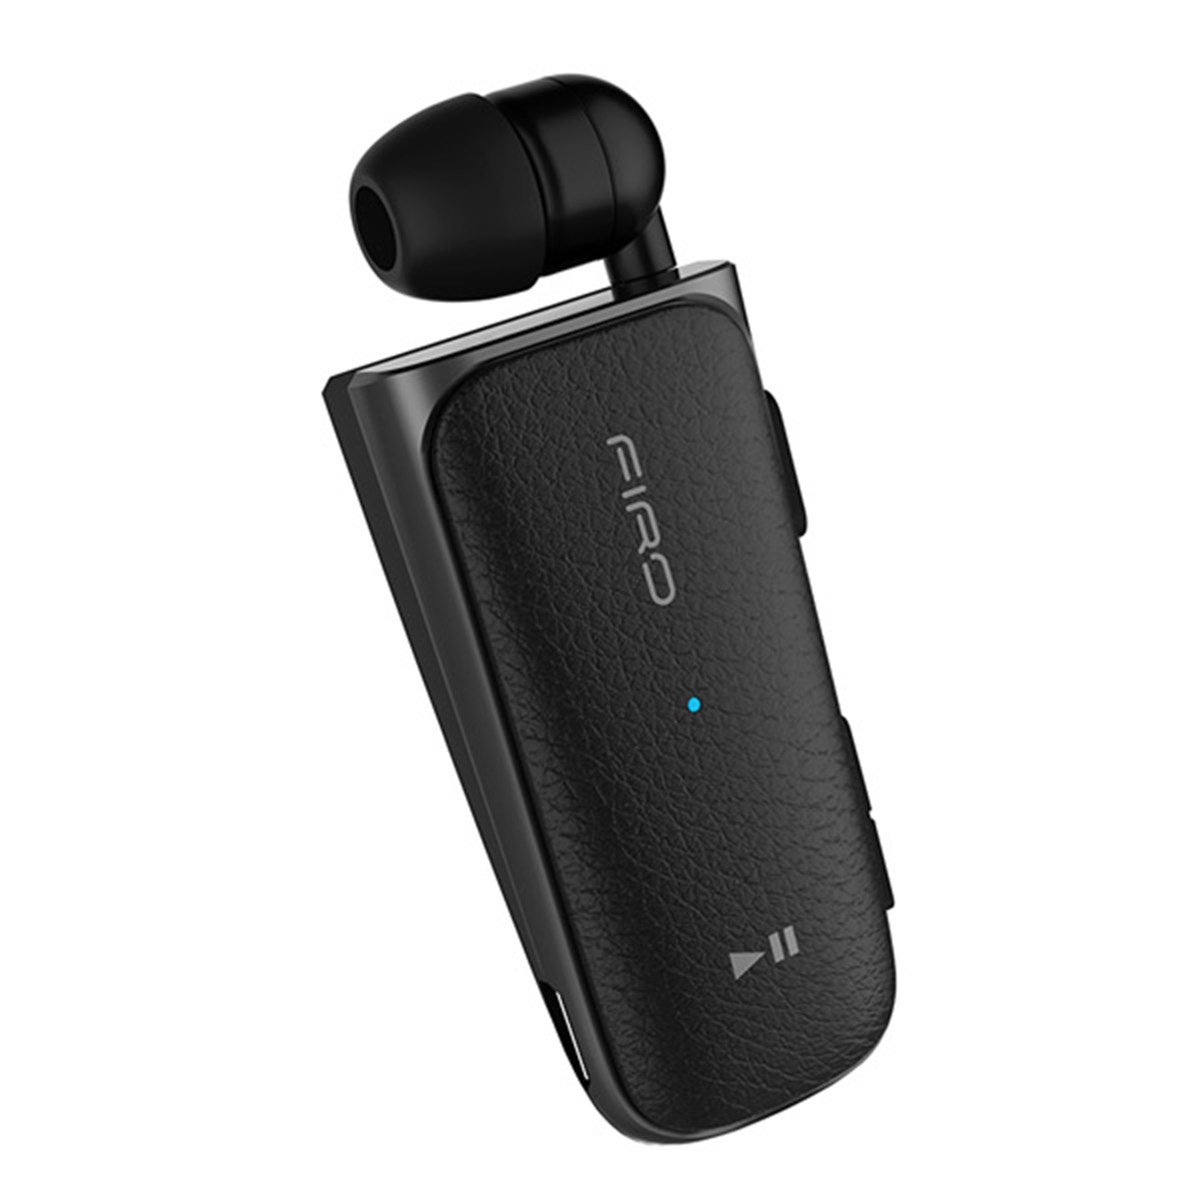 Firo H108 Makaralı Bluetooth Kulaklık | Mobicaps